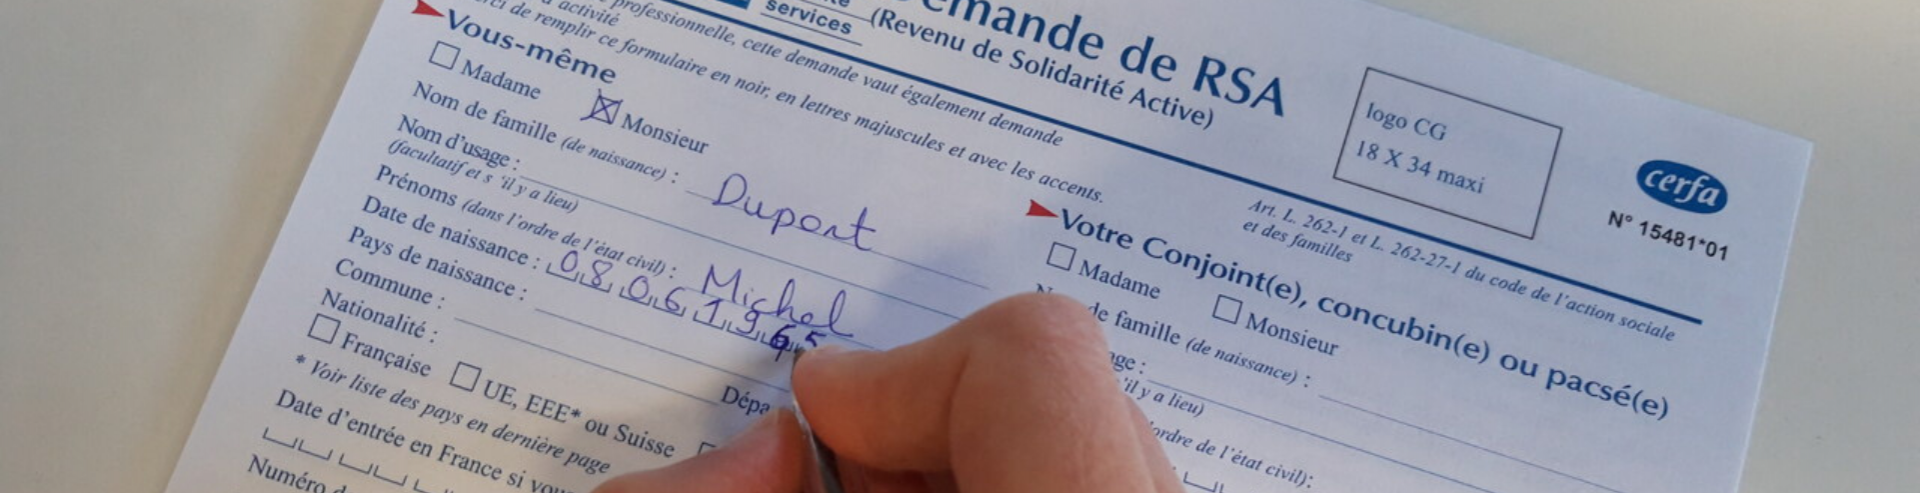  Projet France Travail : Le Département de la Mayenne accueille M. Thibaut Guilluy pour un temps d’échange sur l’accompagnement rénové des allocataires du Revenu de Solidarité active (RSA)